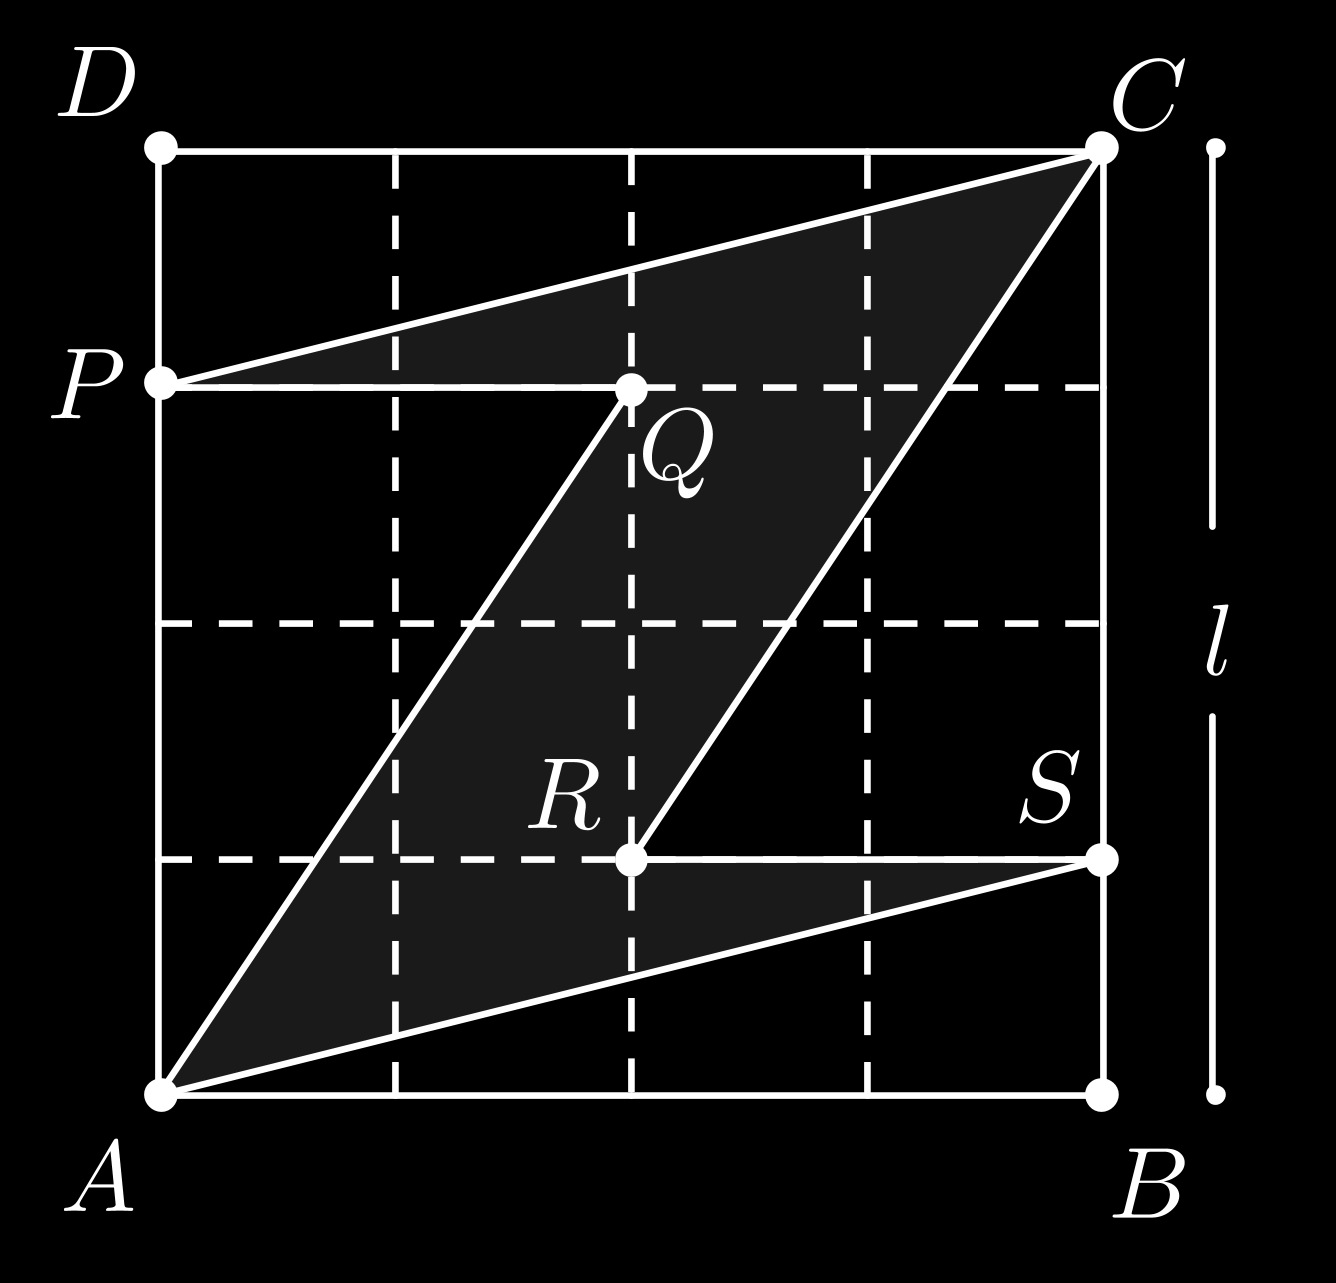 quadrado ABCD subtraídas as áreas dos triângulos AP Q, CRS, ABS e CDP.